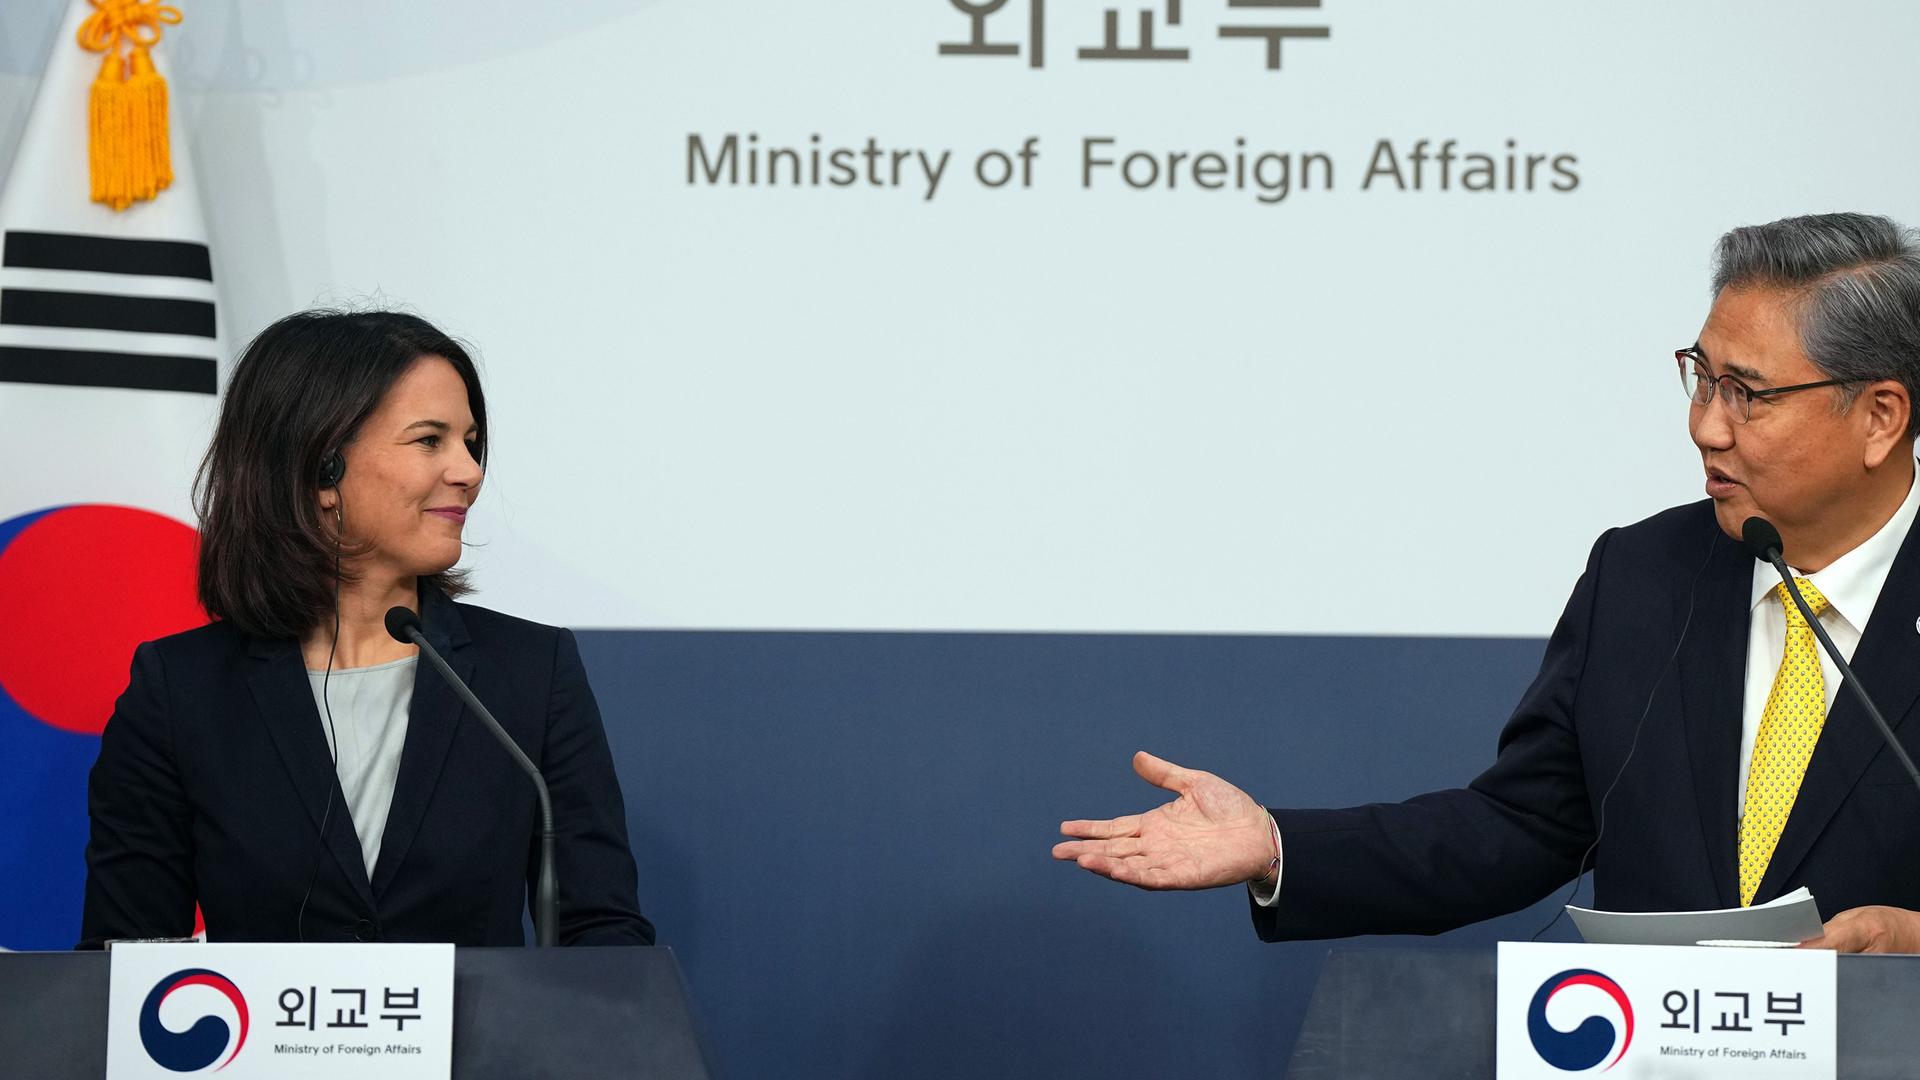 Annalena Baerbock und der südkoreanische Außenminister Park Jin stehen hinter Rednerpunlten und lächeln: Park macht eine einladende Handbewegung.